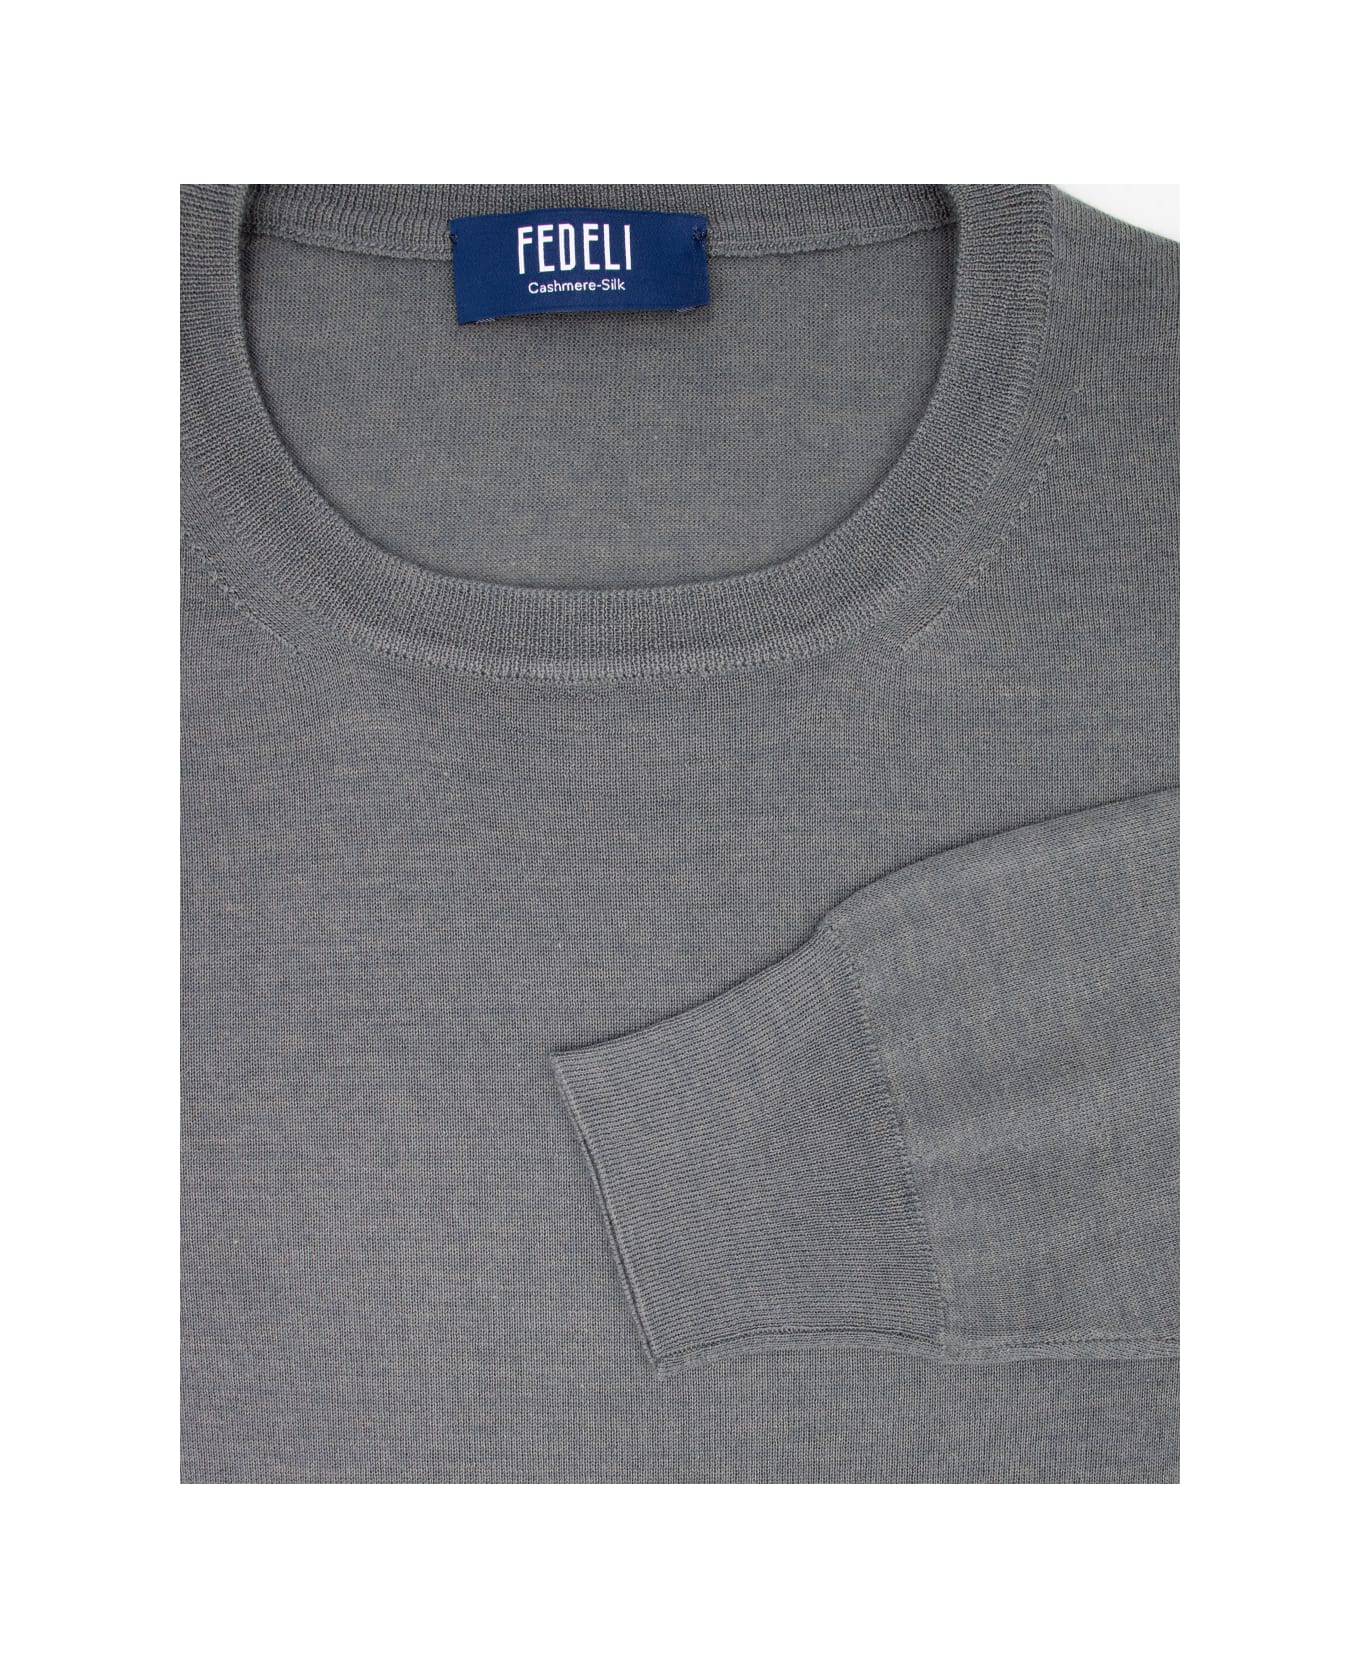 Fedeli Sweater - 80 ニットウェア